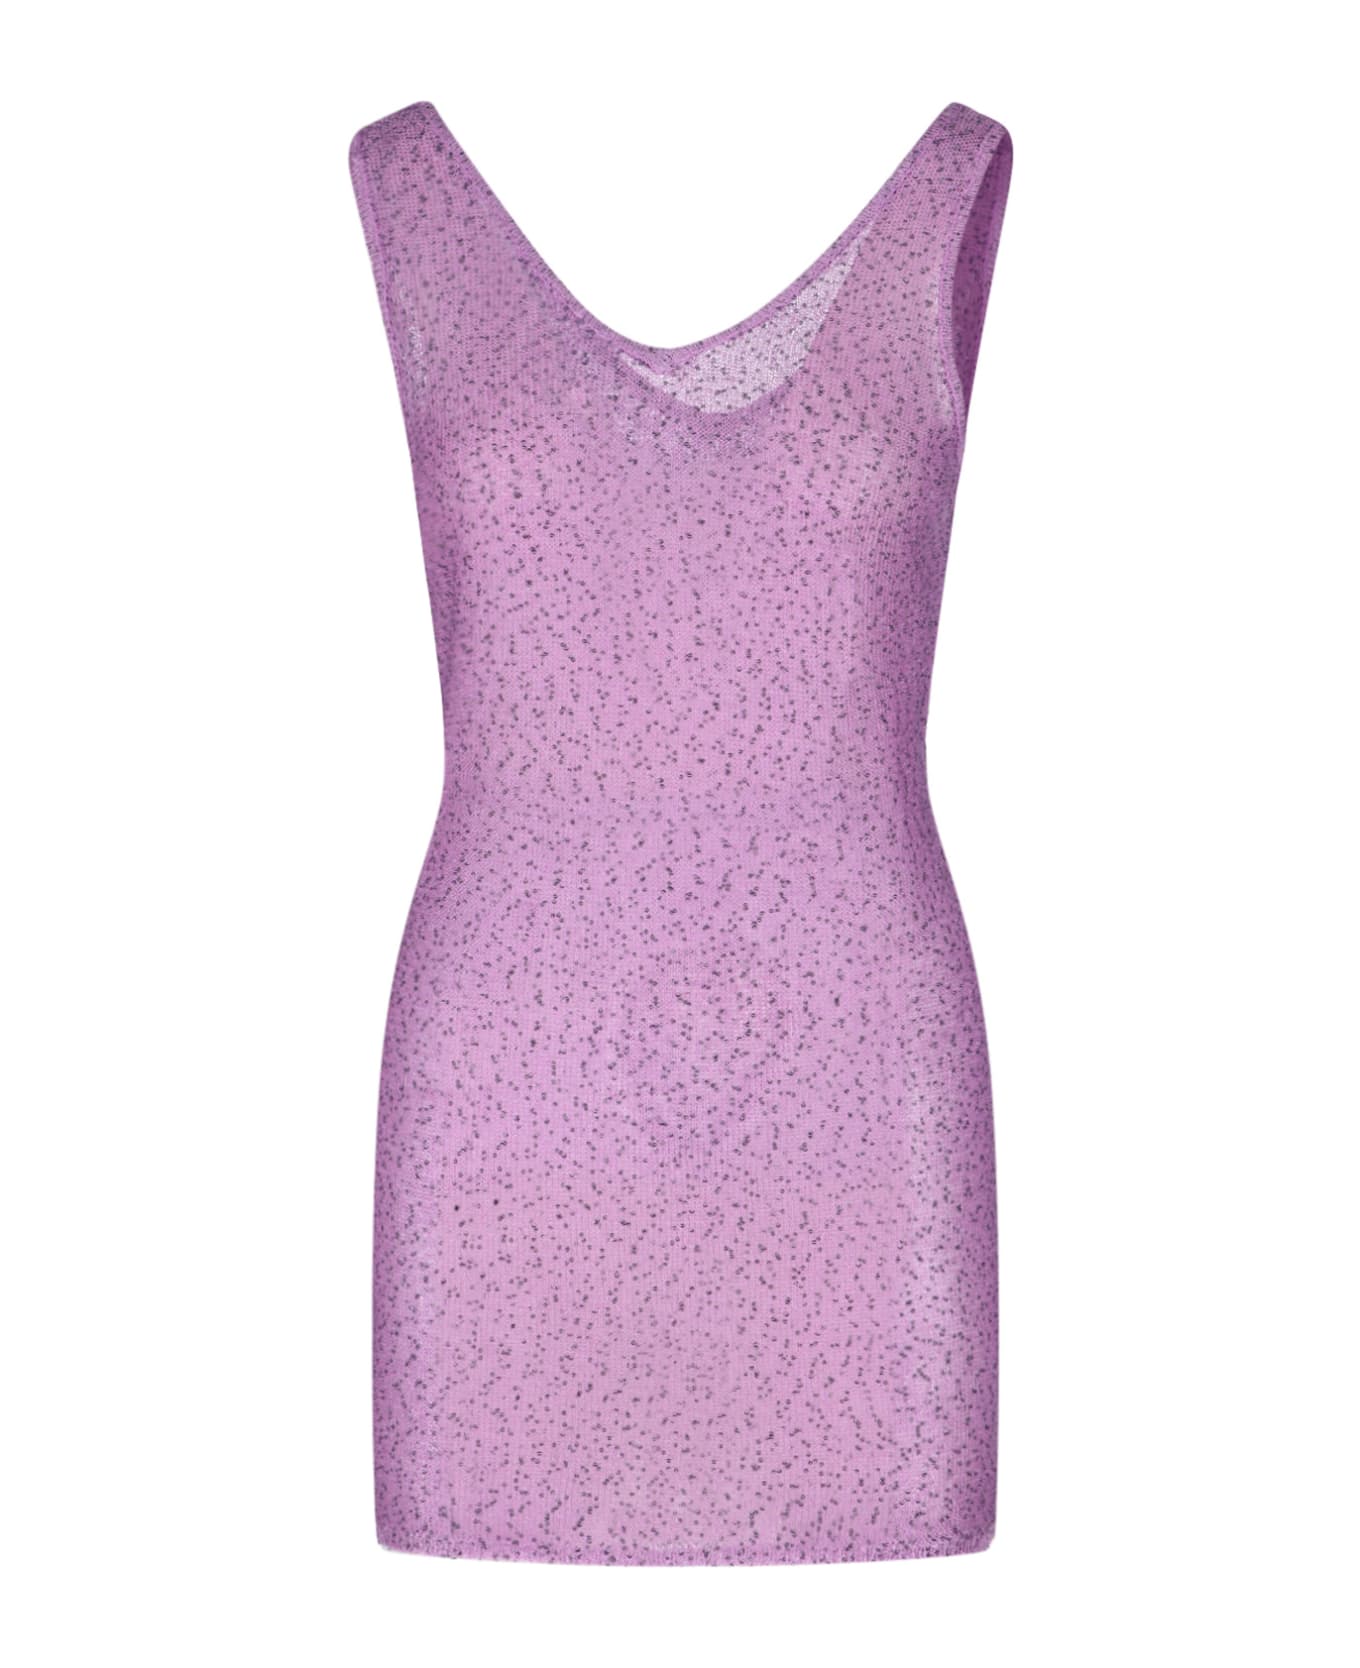 REMAIN Birger Christensen Sequins Top Dress - Purple